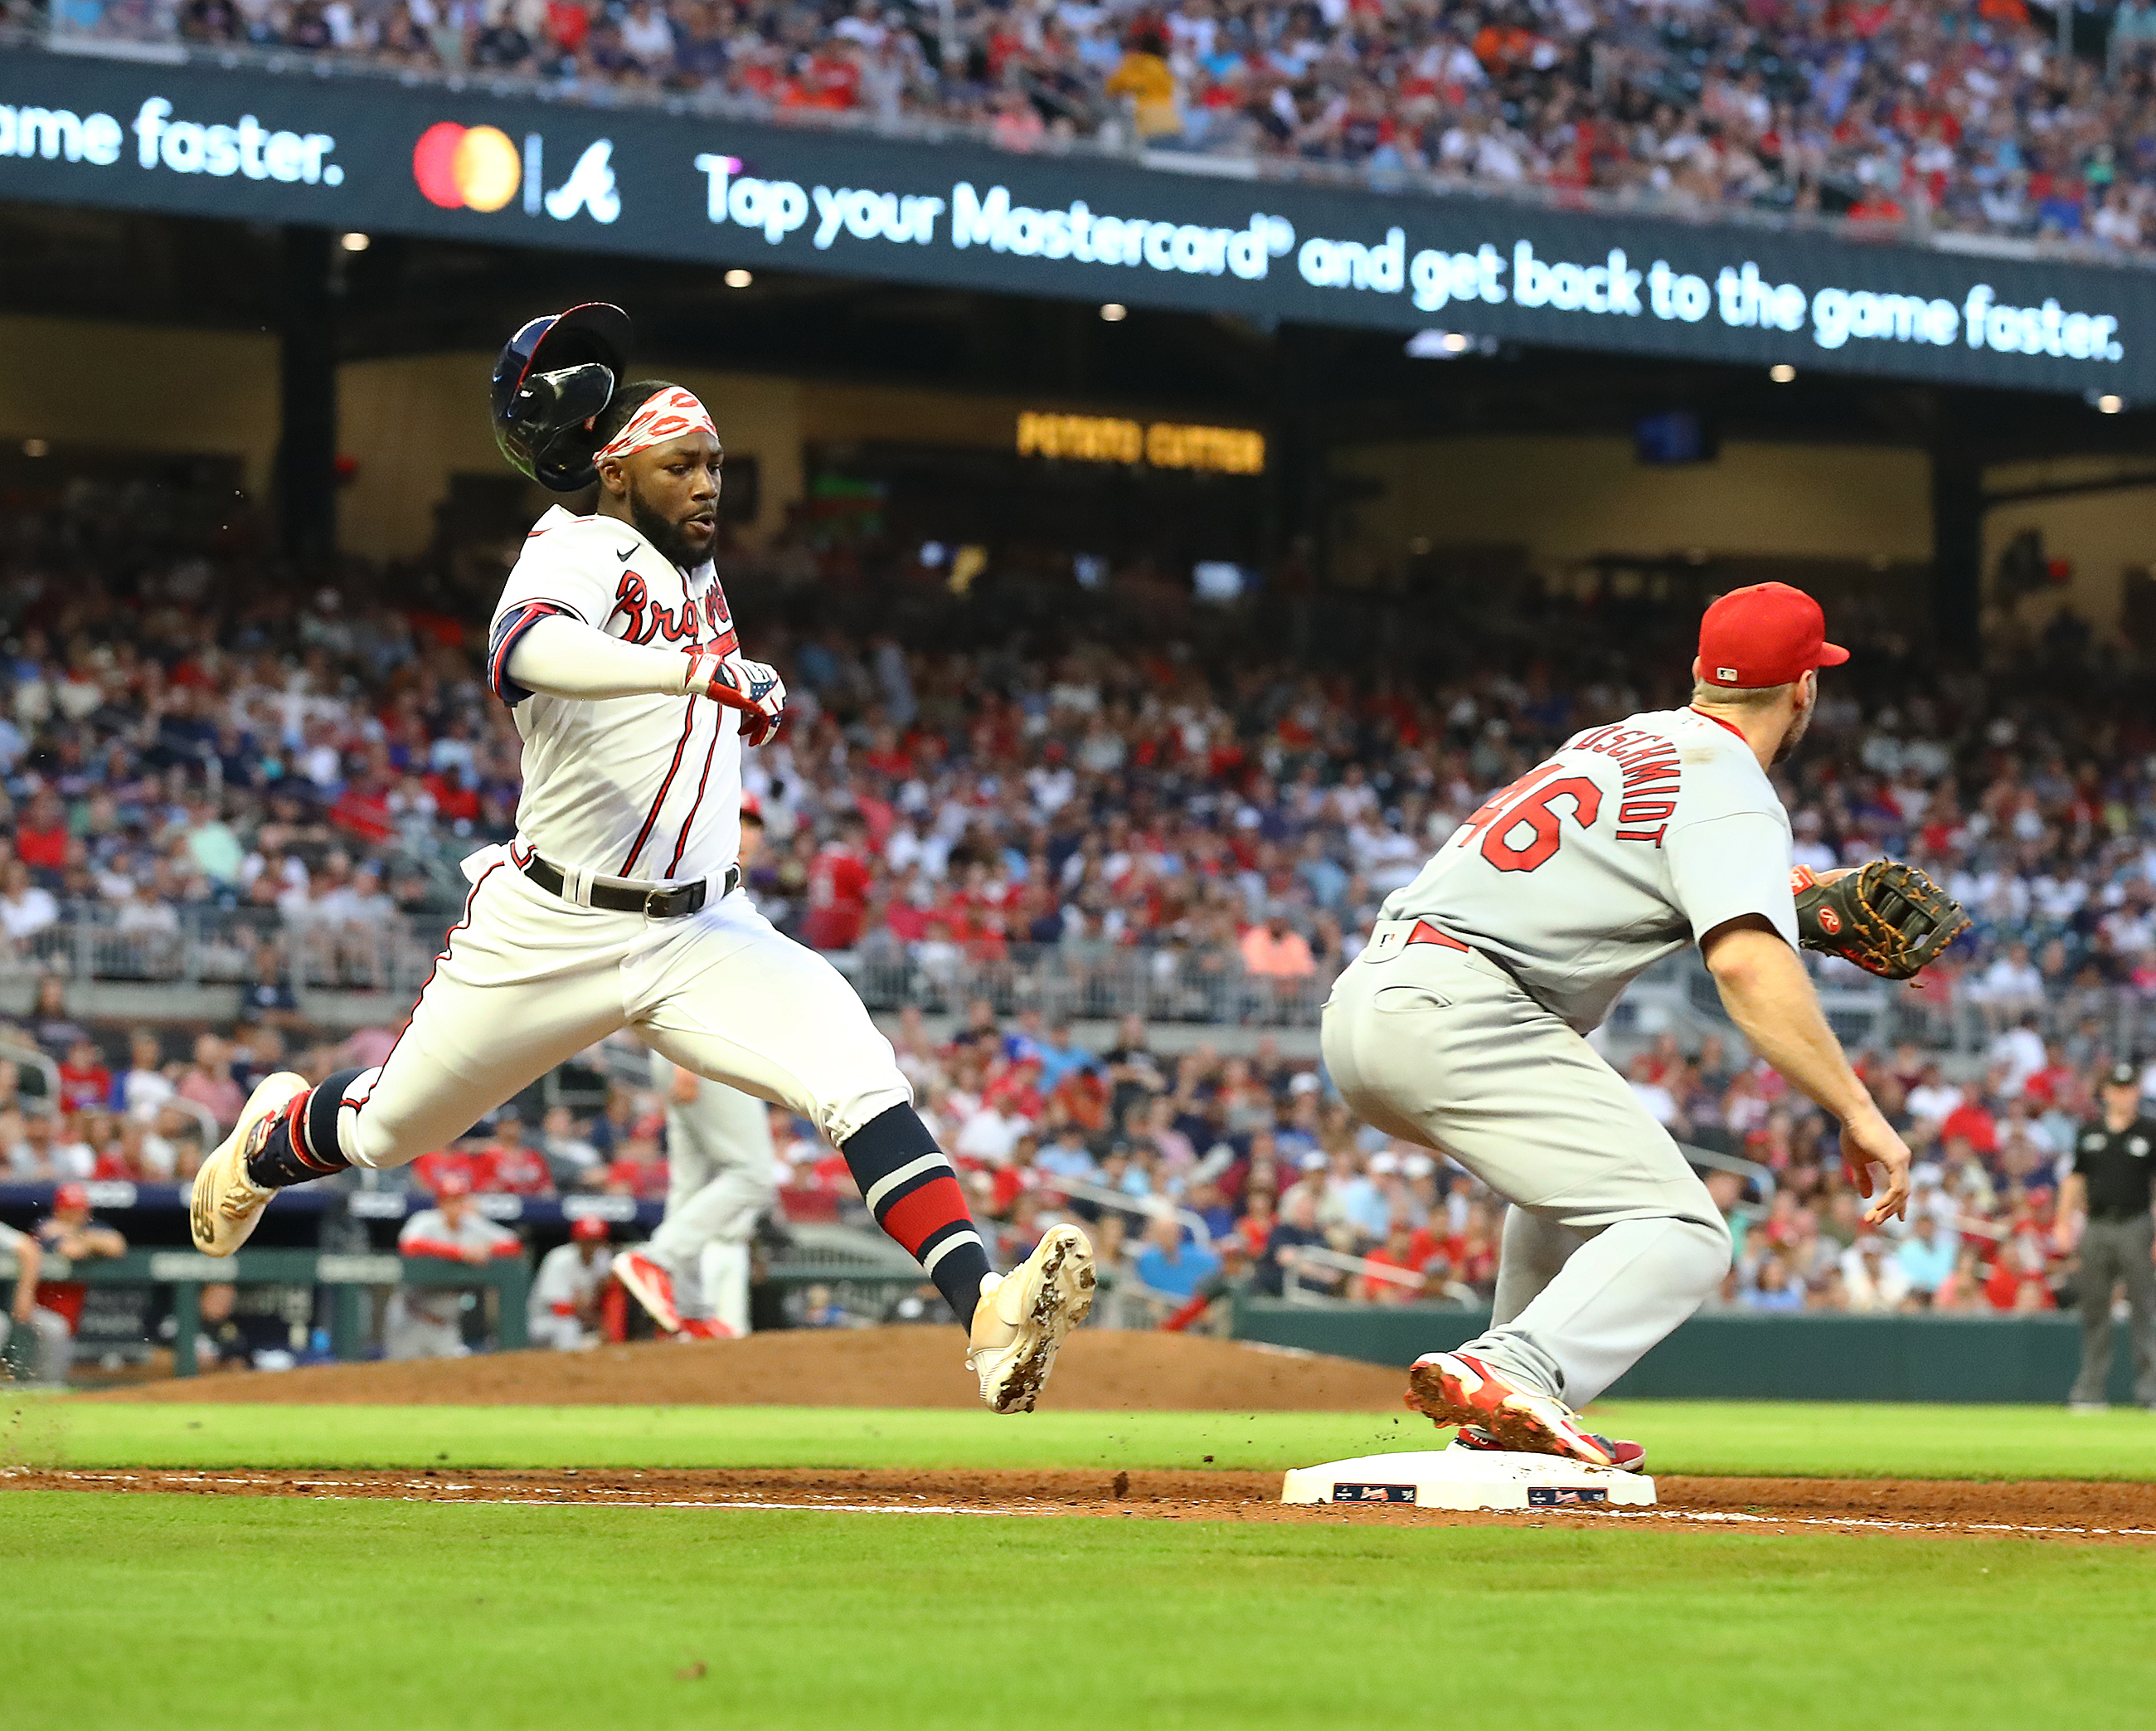 2022 m. liepos 5 d., antradienį, Atlantoje vykstančiose MLB beisbolo rungtynėse, „Braves“ krašto žaidėjas Michaelas Harrisas už singlą sumušė pirmąjį Sent Luiso „Cardinals“ žaidėją Paulą Goldschmidtą.  „Curtis Compton / Curtis.Compton@ajc.com“